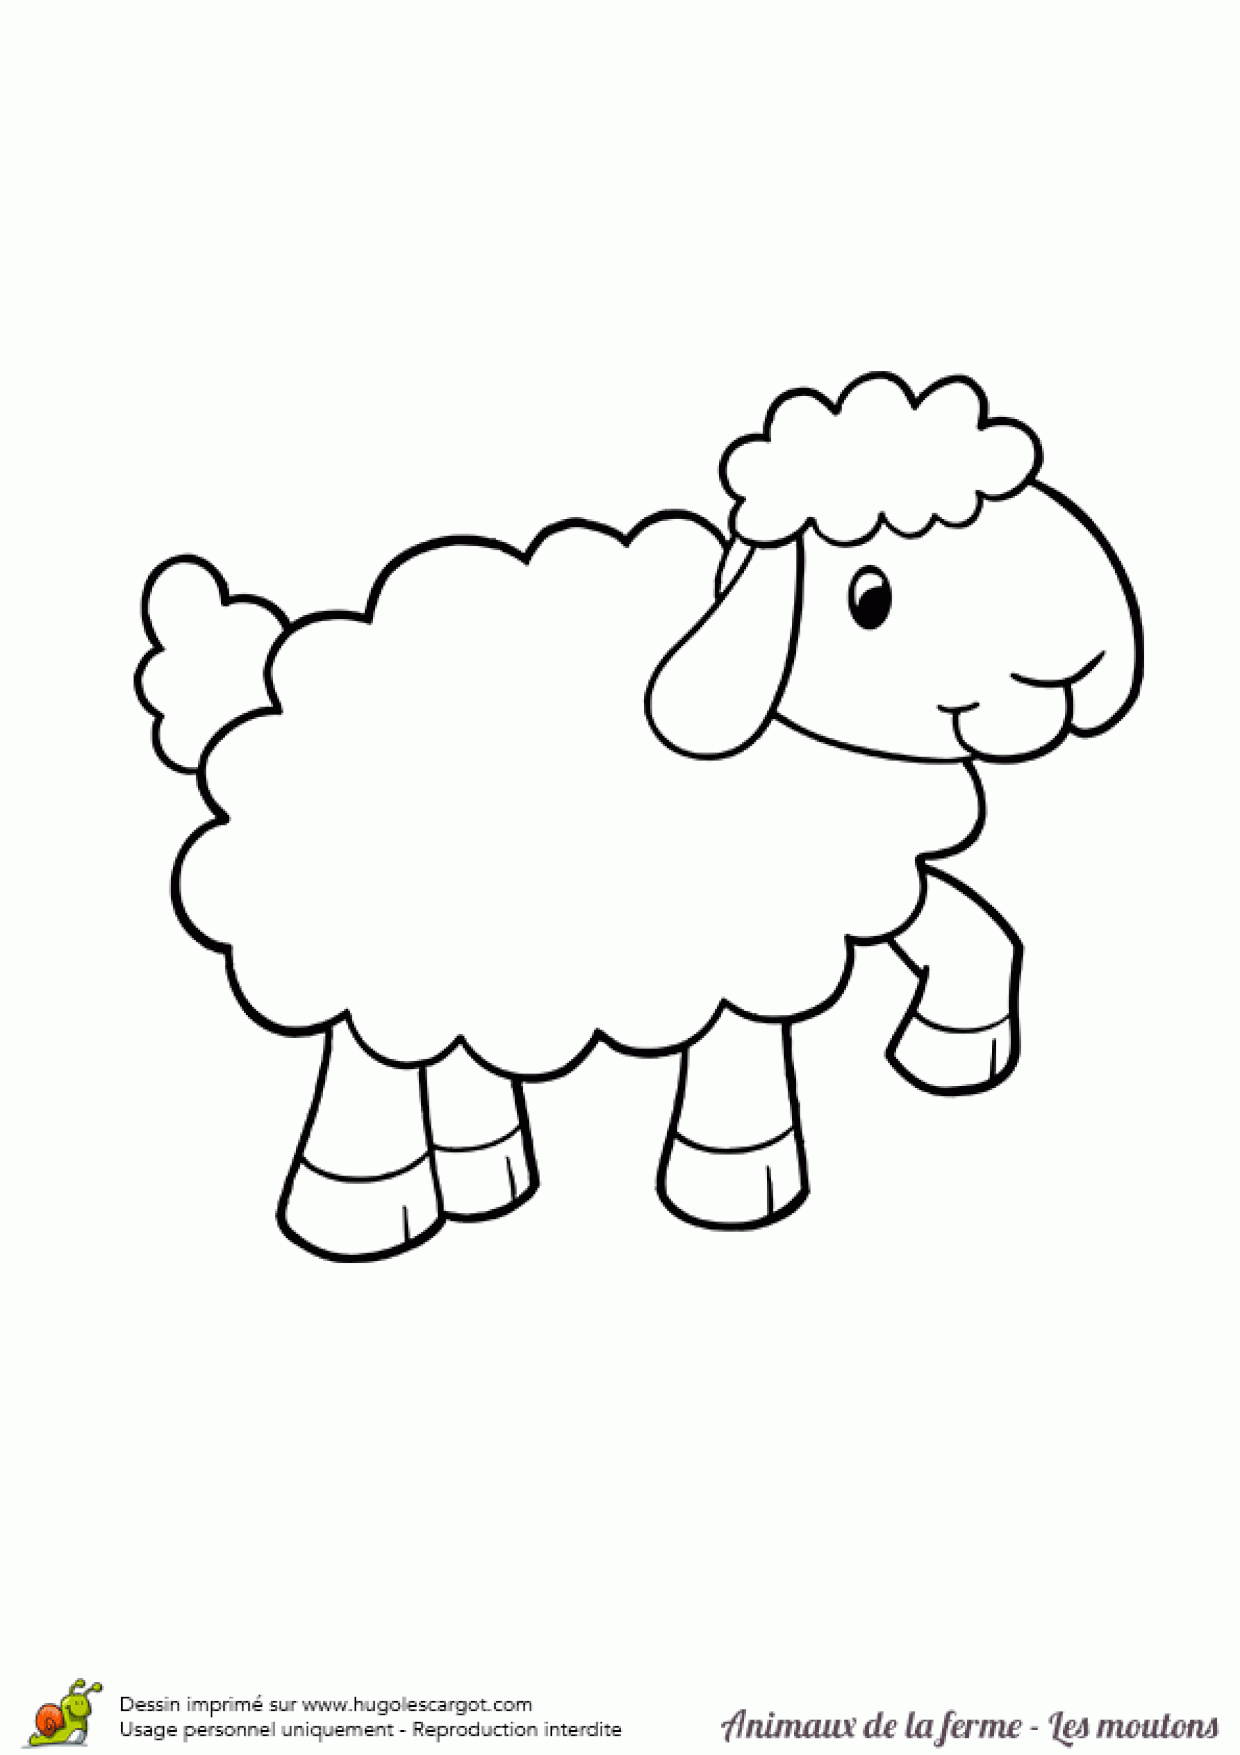 Coloriage Animaux De La Ferme Joli Mouton Sur Hugolescargot pour Les Animaux De La Ferme Maternelle 